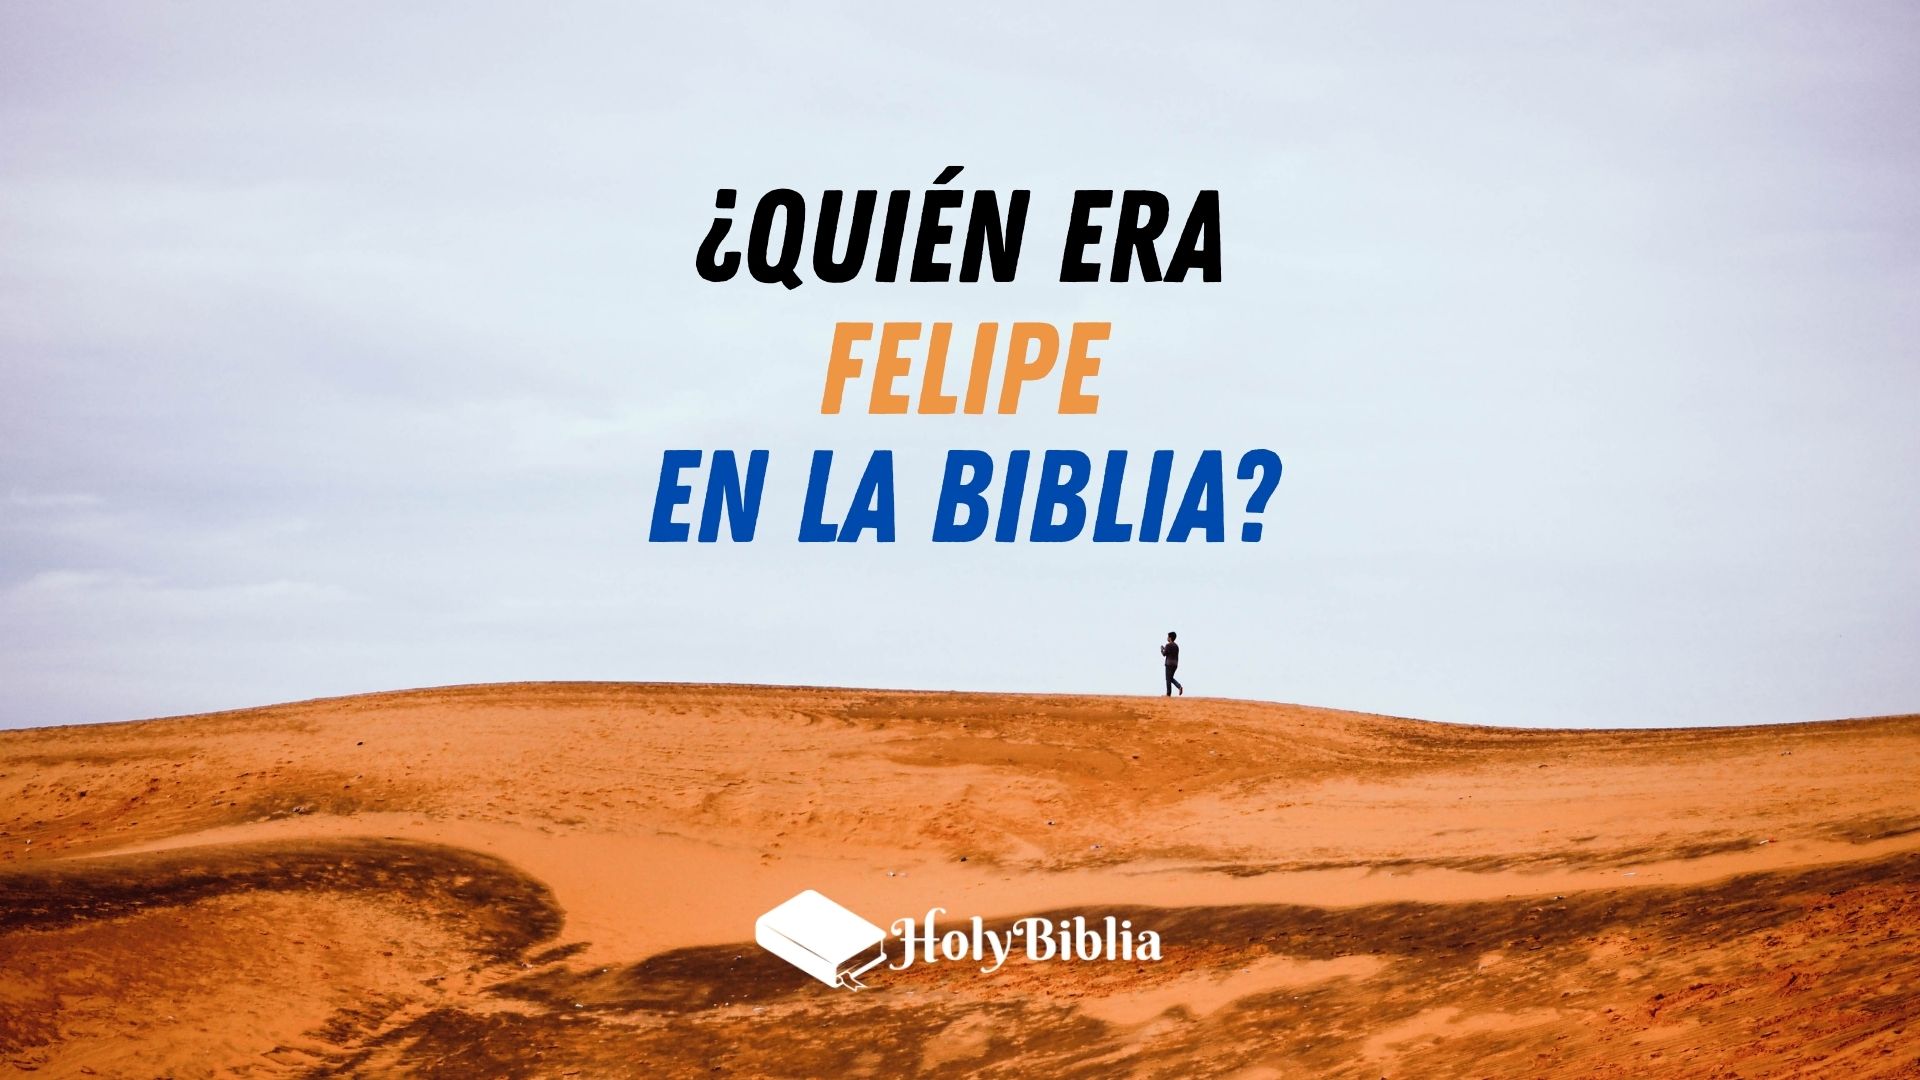 Quién era Felipe el Apóstol y el evangelista en la Biblia